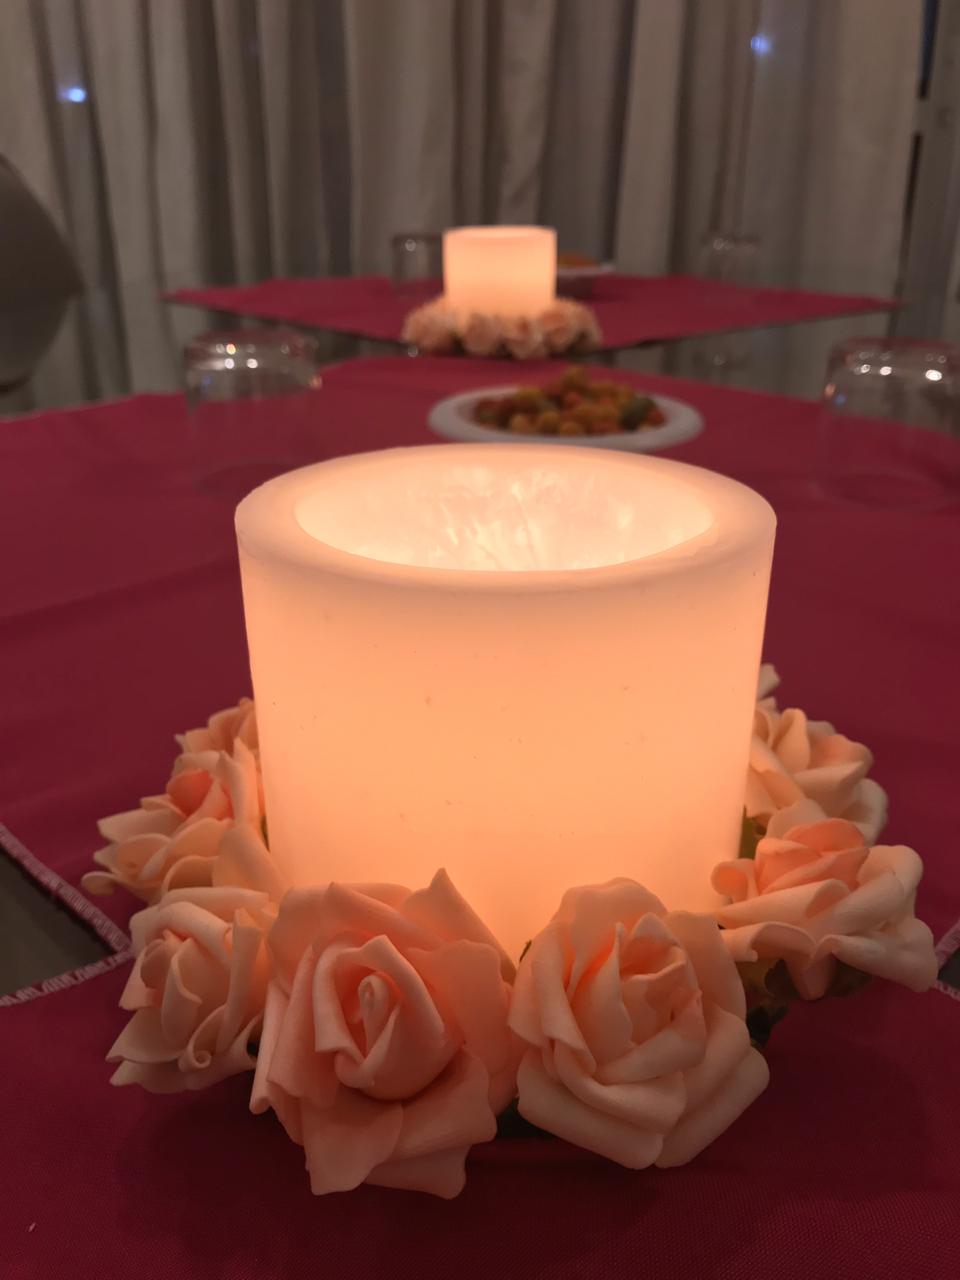 Ritual de aniversário com velas: aprenda como decorar